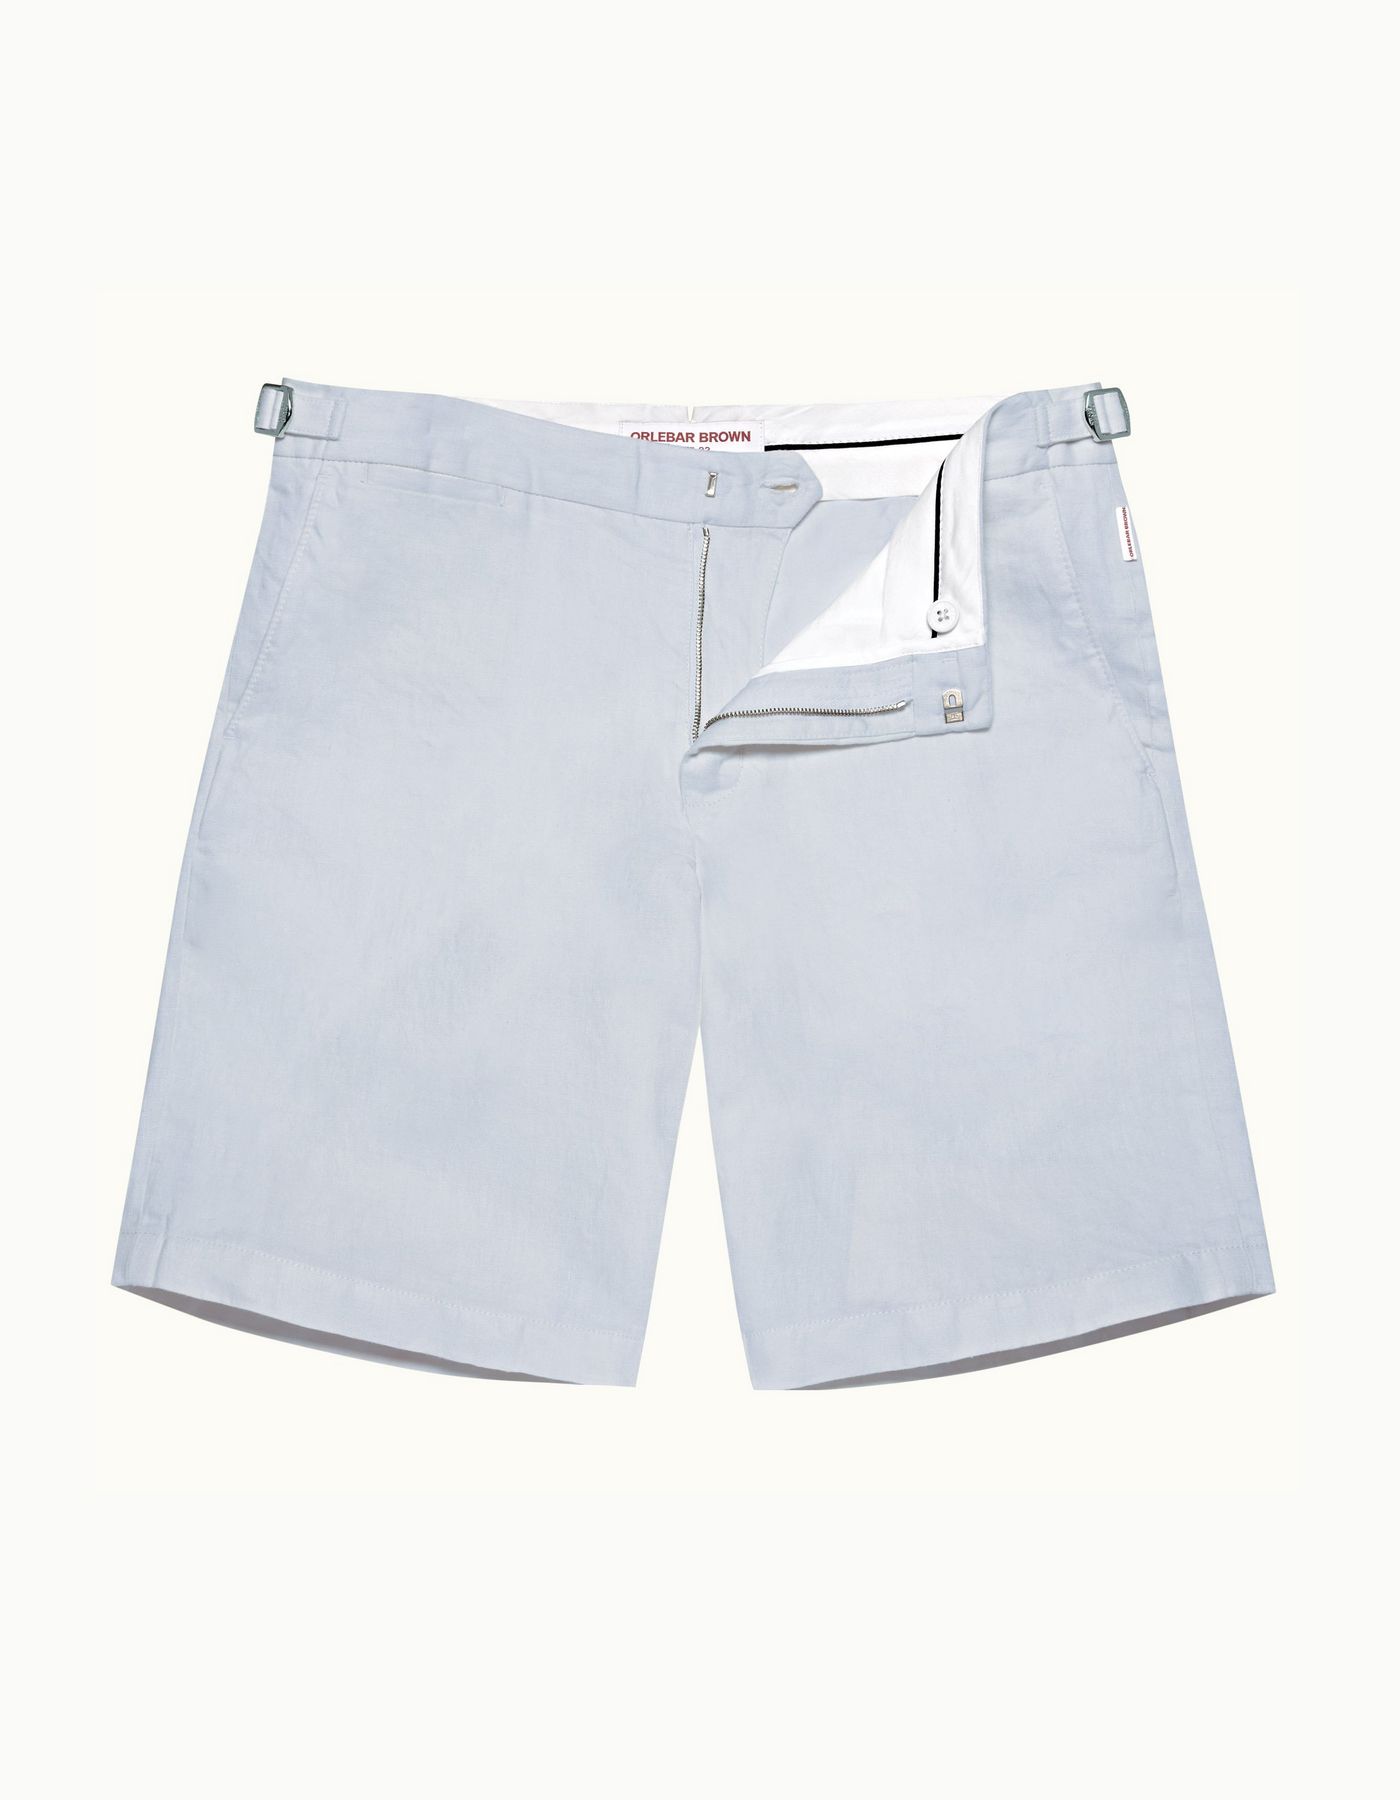 Norwich Linen - Mens Light Island Sky Tailored Fit Linen Shorts